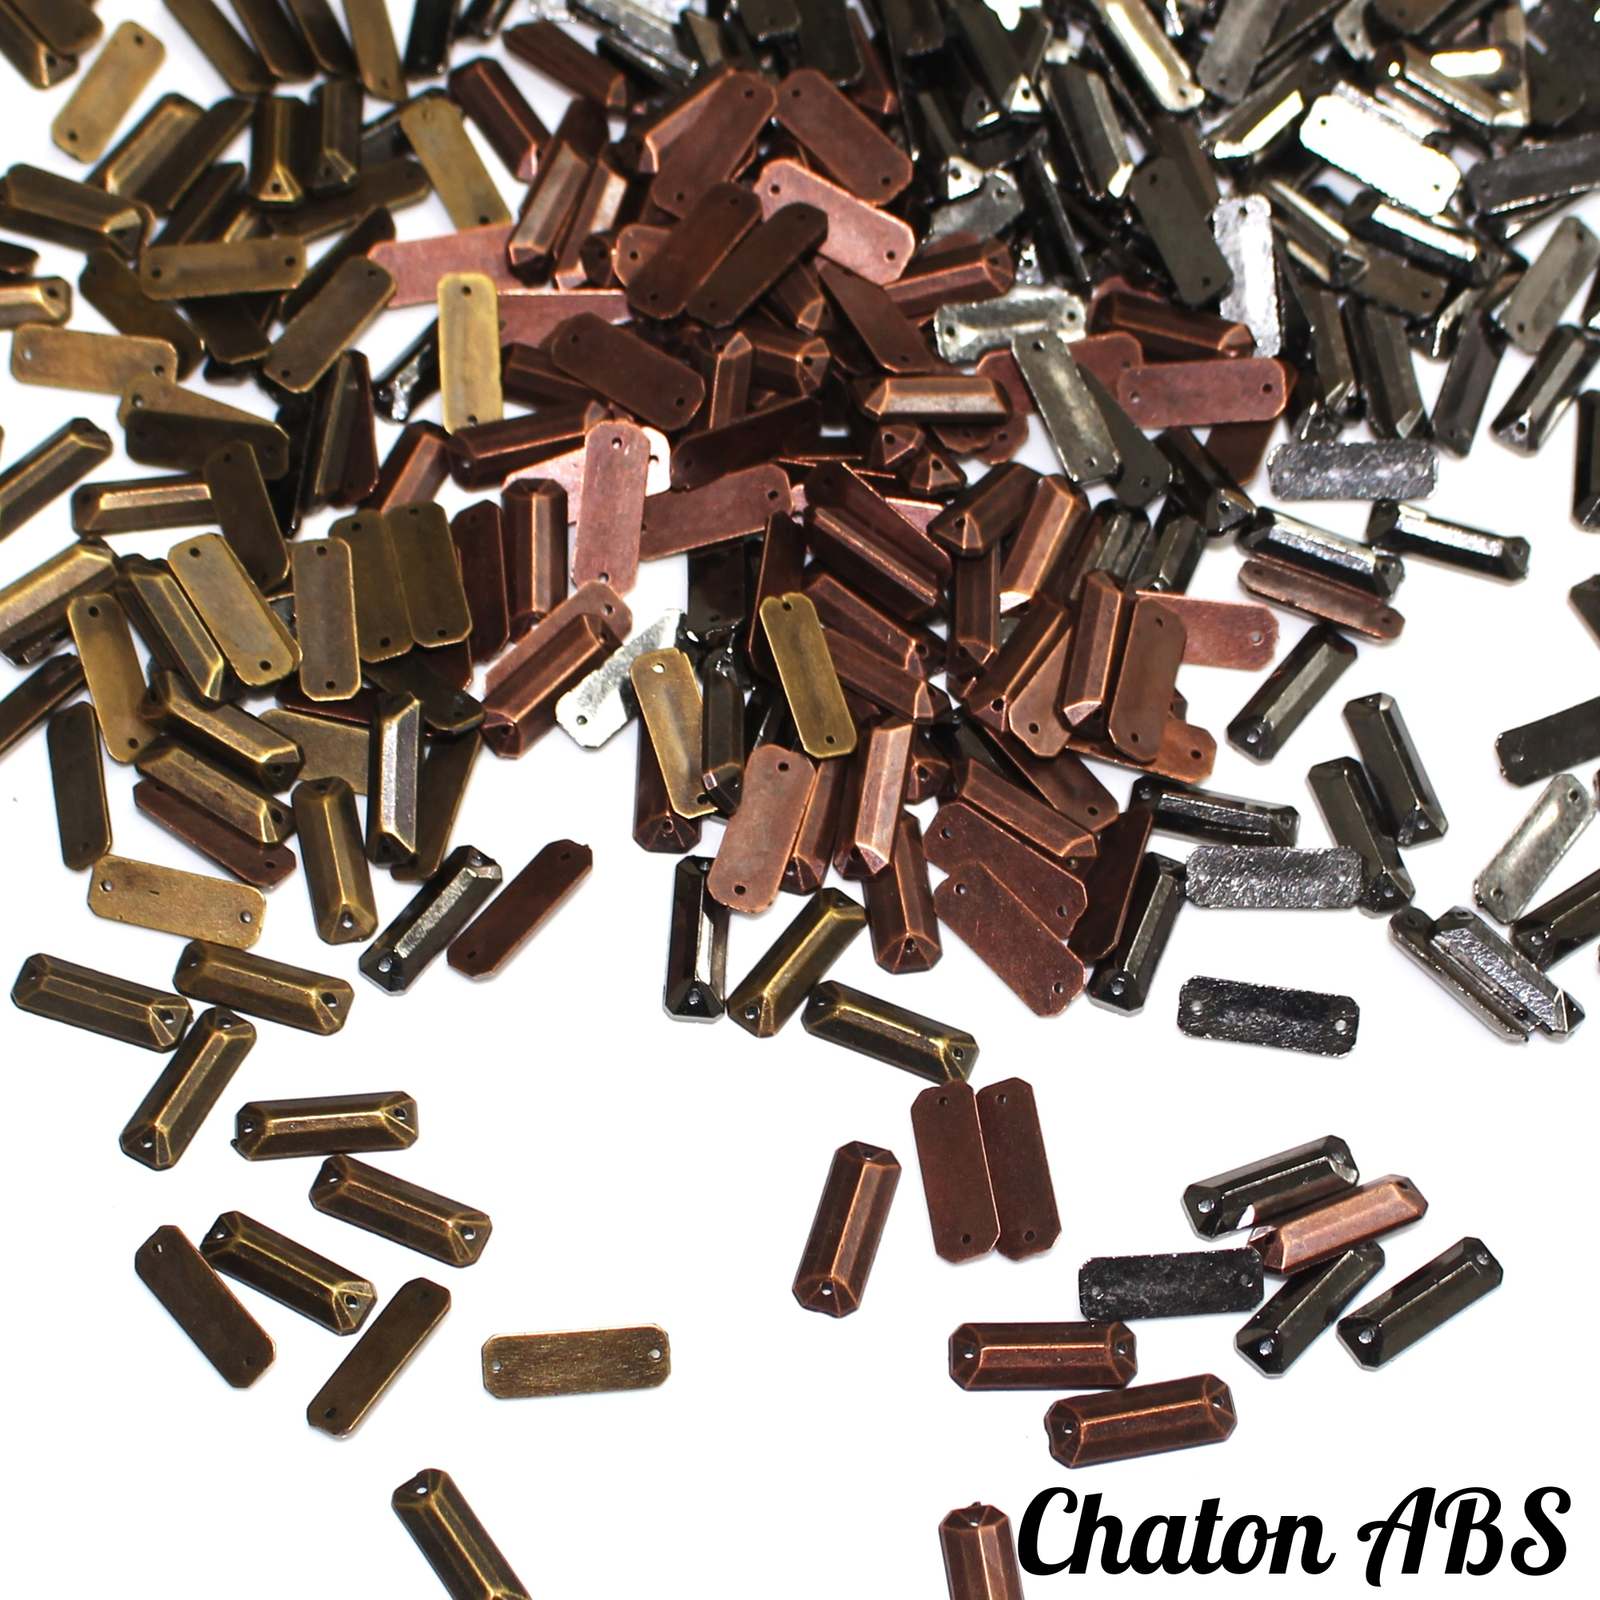 Chaton ABS  Filete 7x19mm 250g